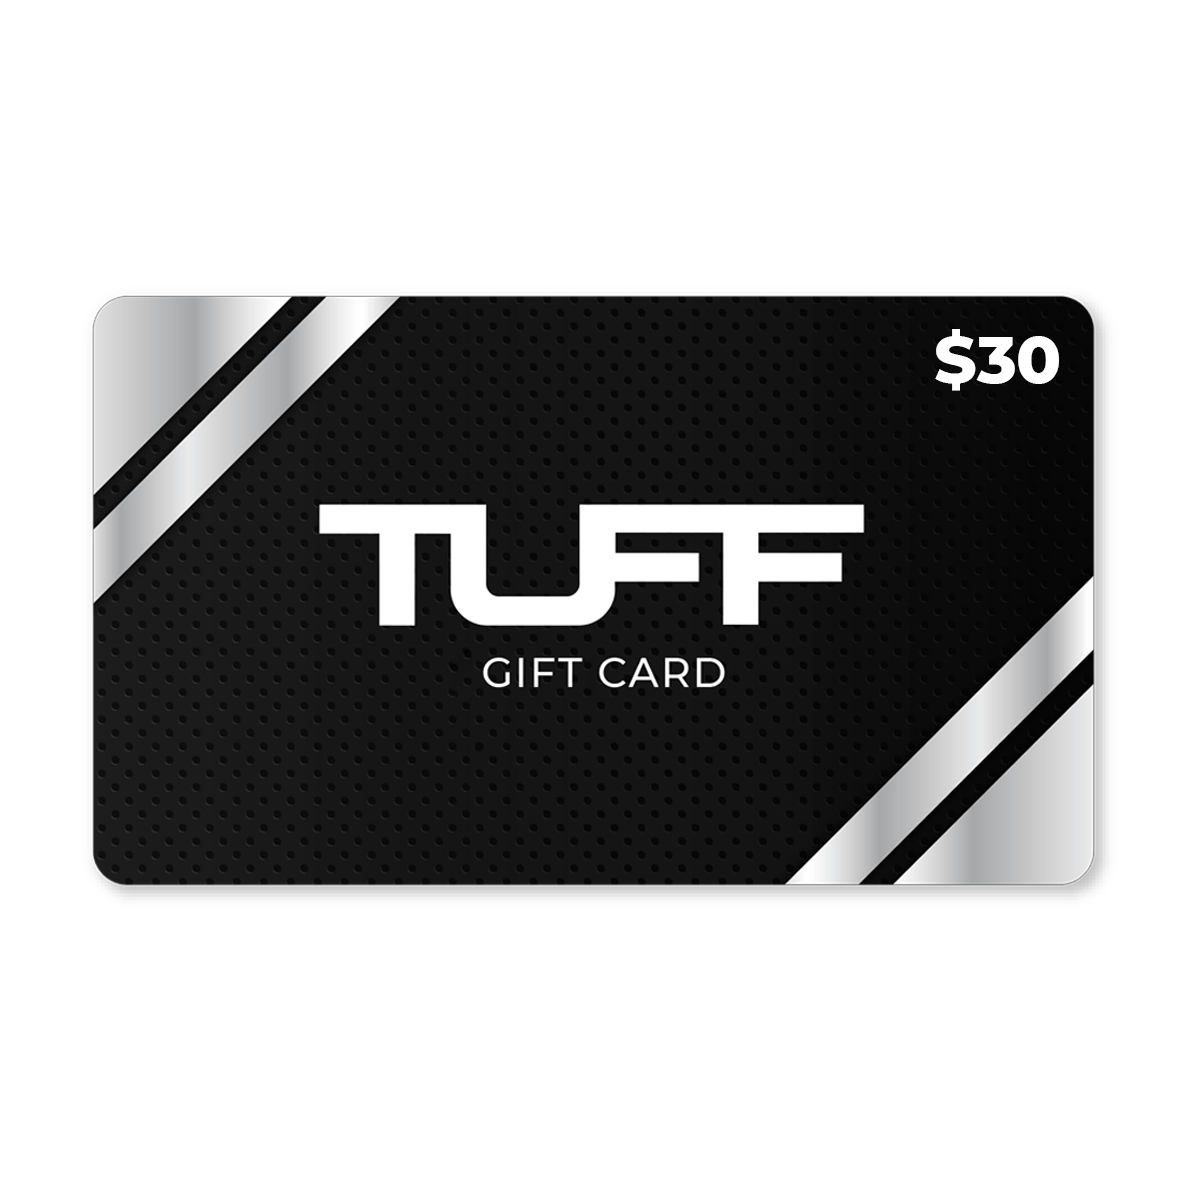 TuffWraps Gift Card $30.00 TUFF Gift Card